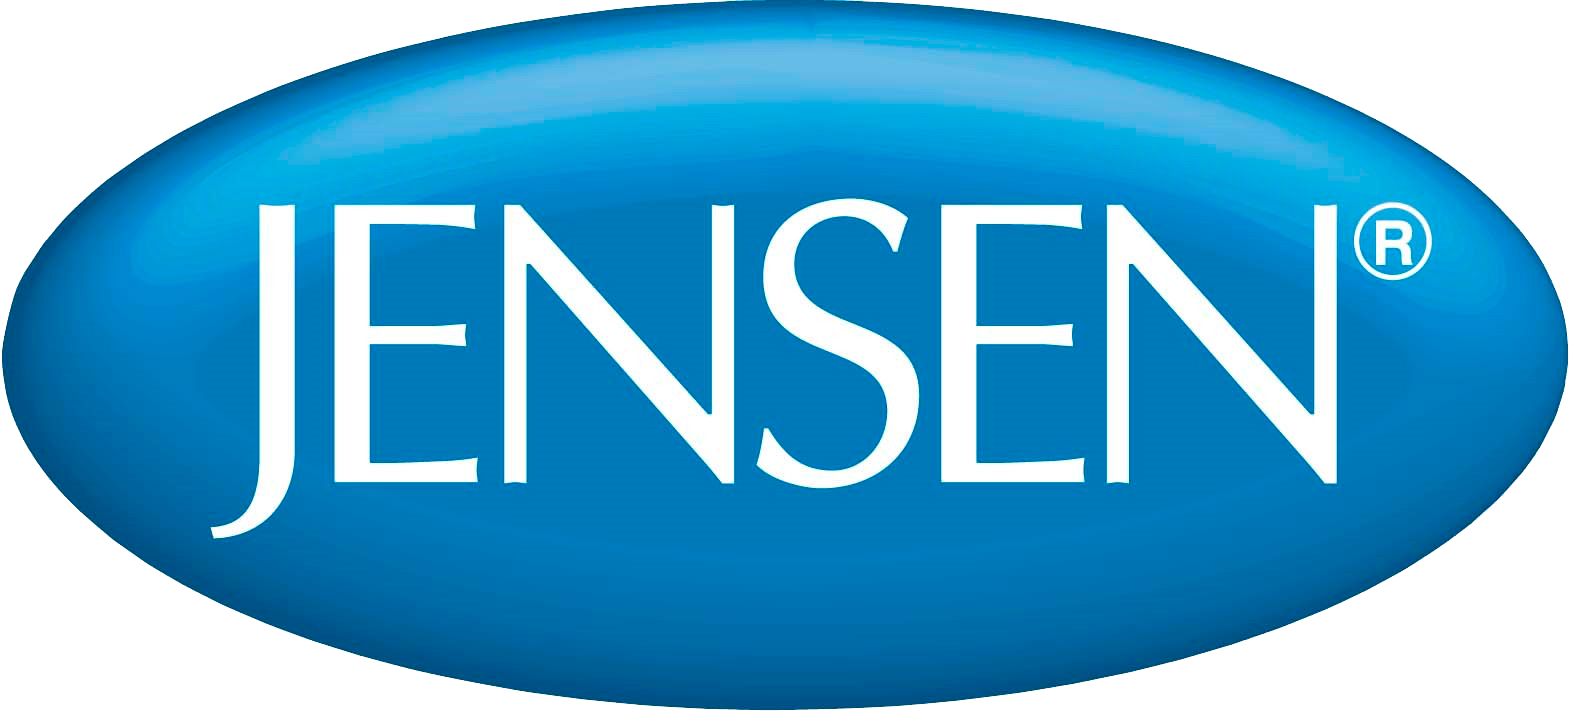 jensen-beds-logo